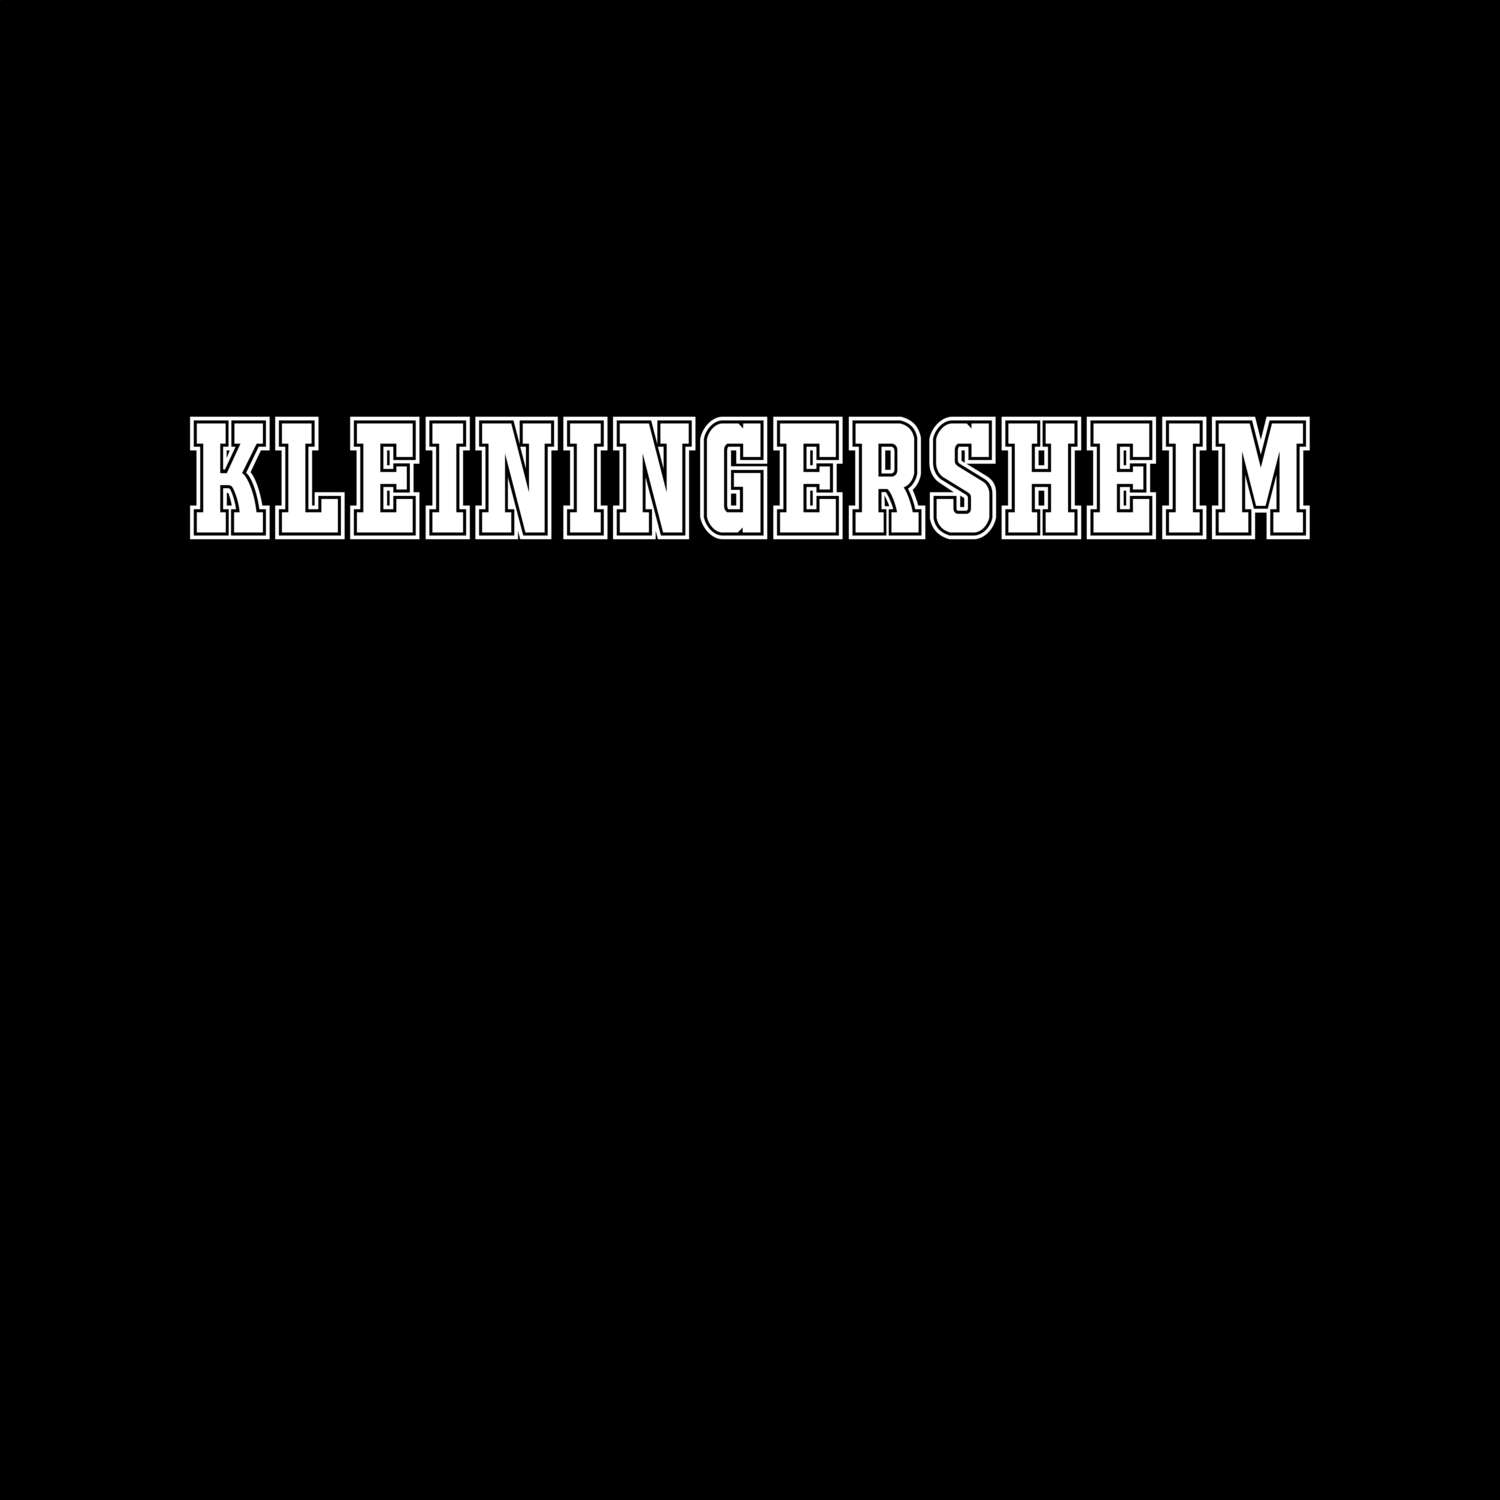 Kleiningersheim T-Shirt »Classic«